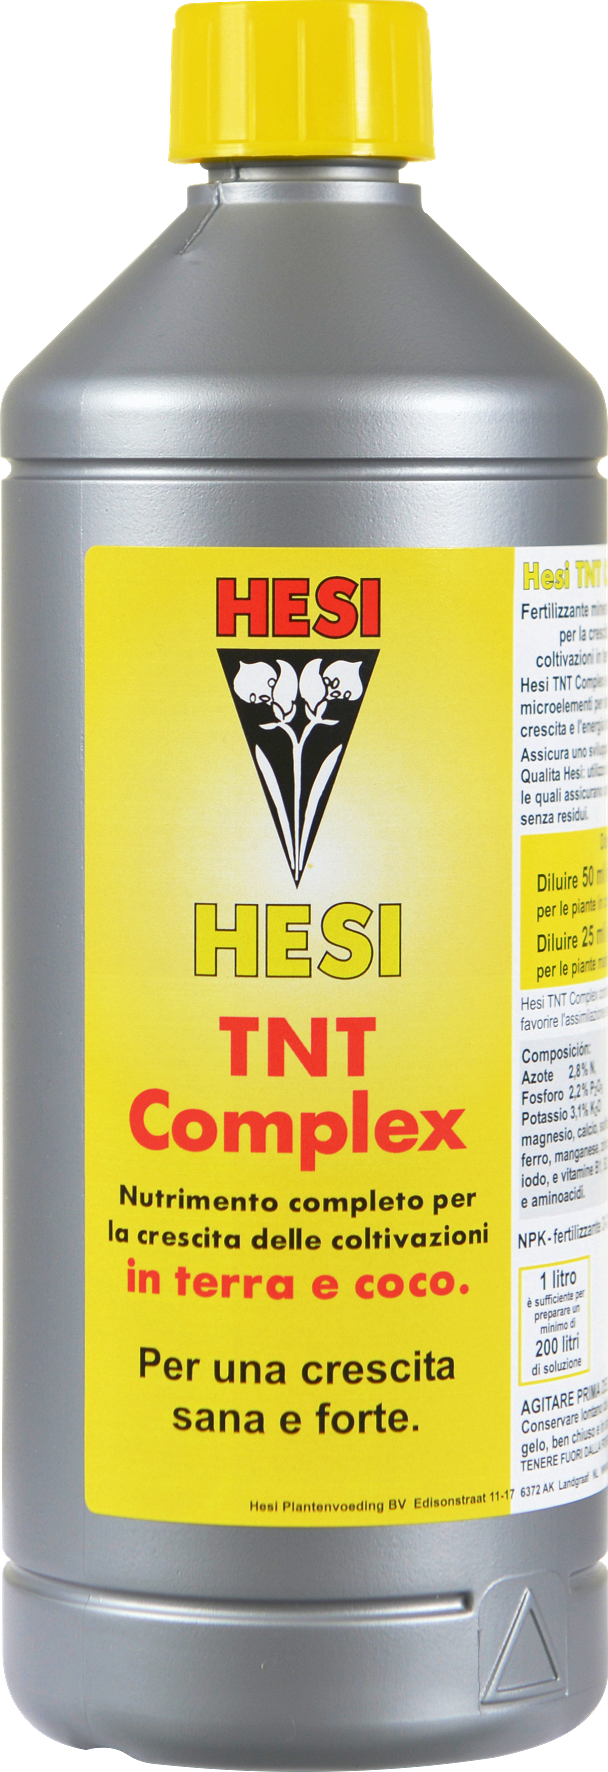 Prev - Hesi - Tnt Complex 1l (608x1772)